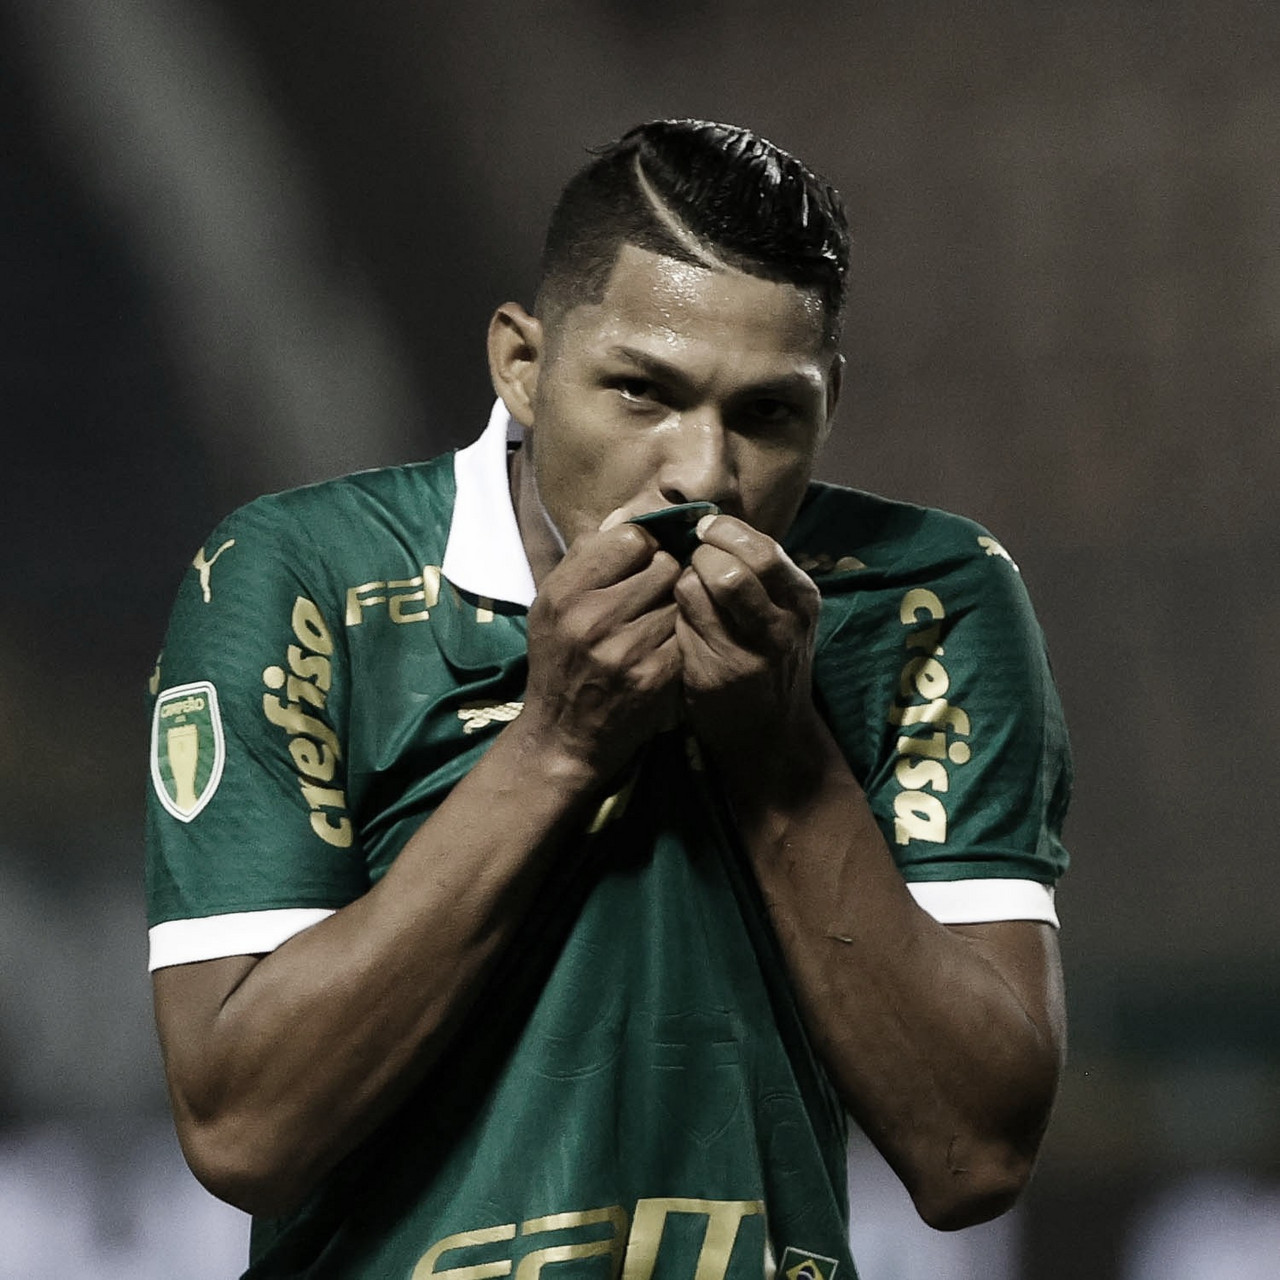 Gols e melhores momentos Santo André x Palmeiras pelo Campeonato Paulista (1-1)